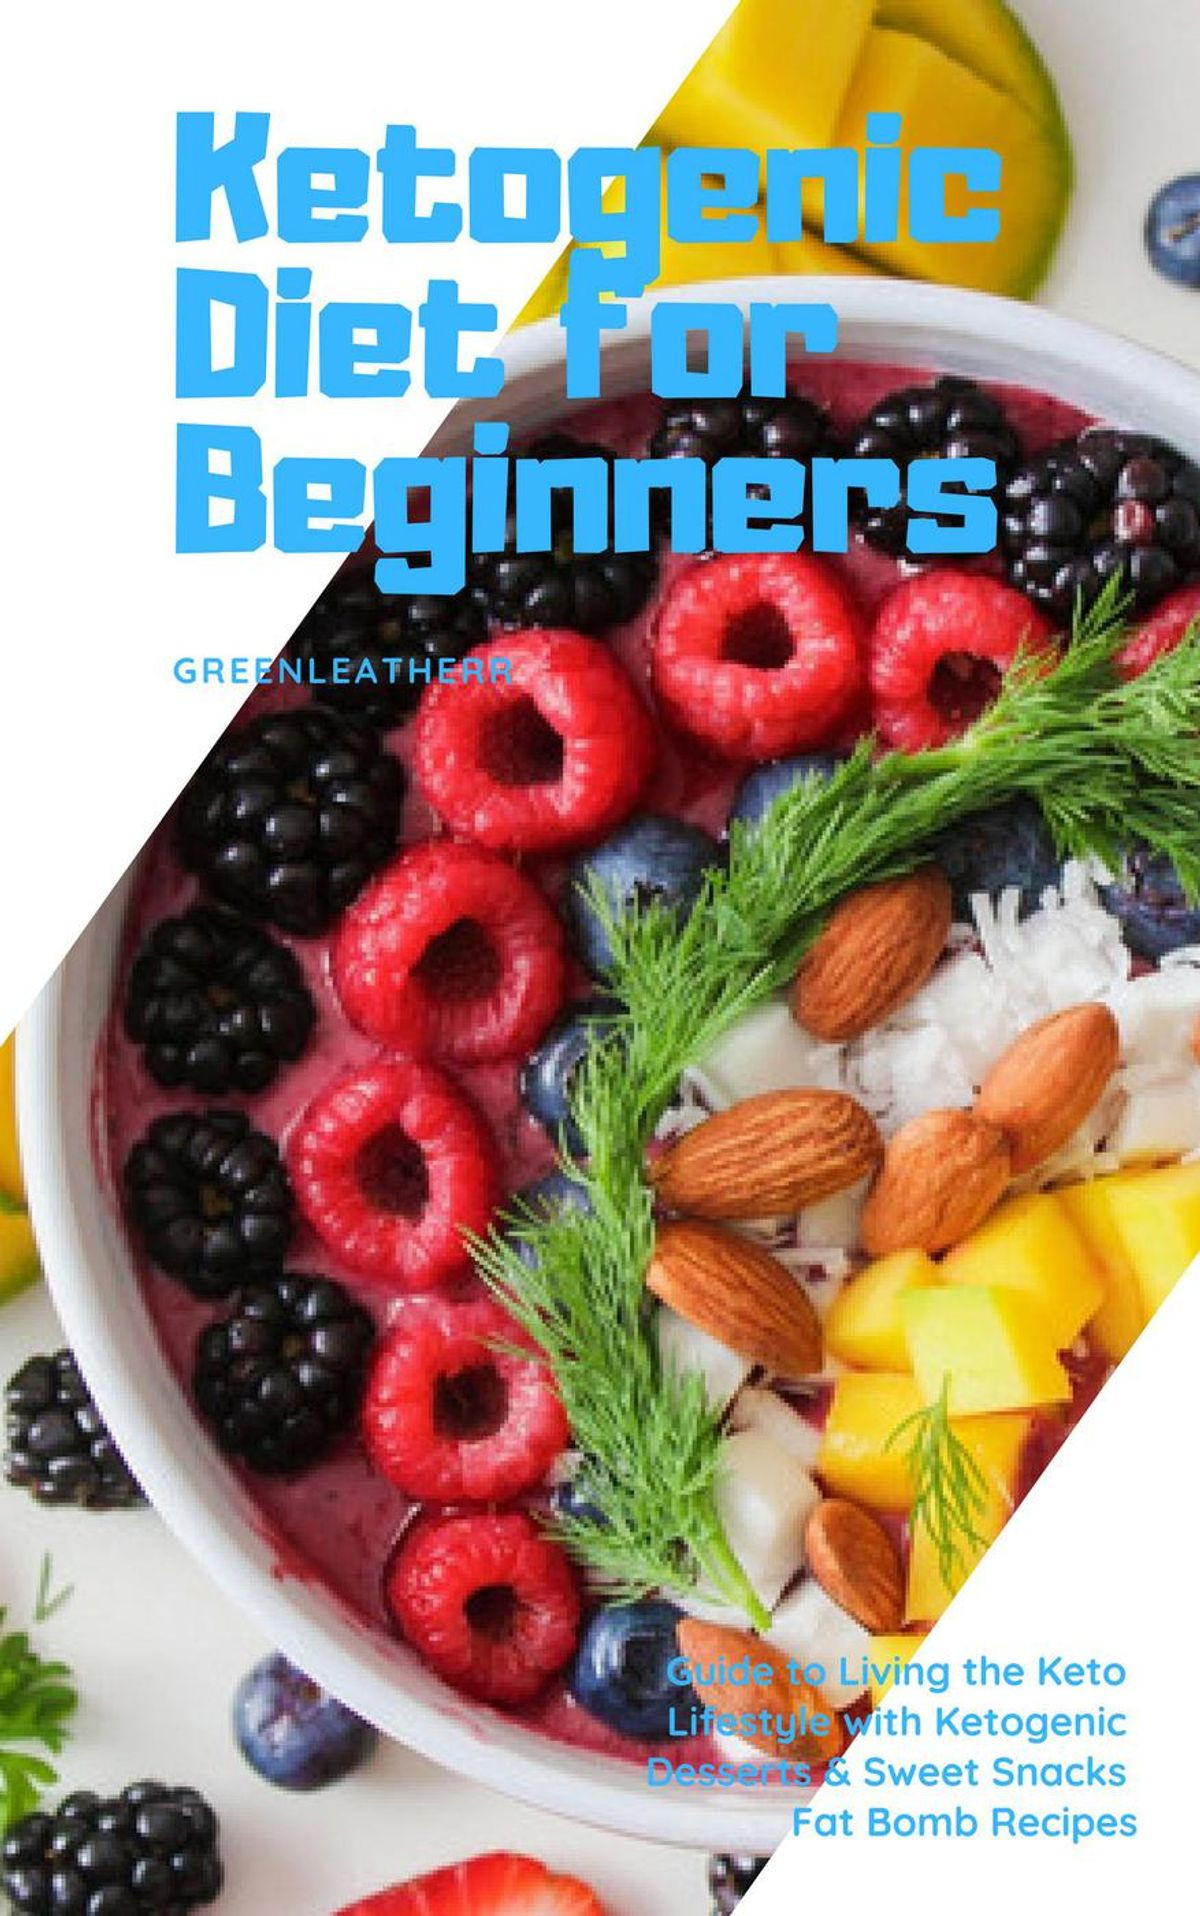 Keto Diet Snacks For Beginners
 Ketogenic Diet for Beginners Guide to Living the Keto